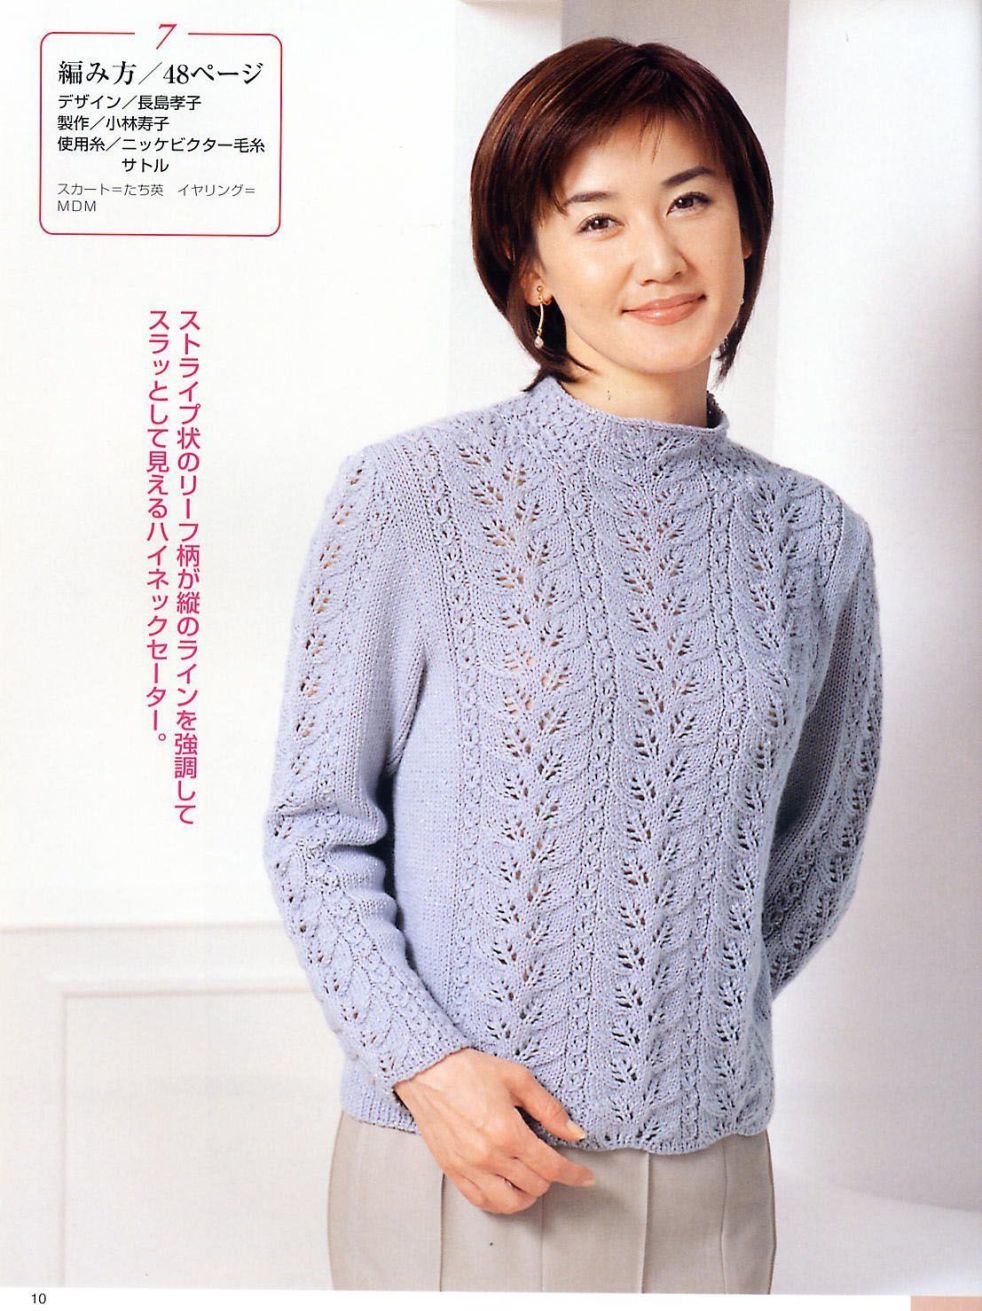 Light blue sweater knitting pattern